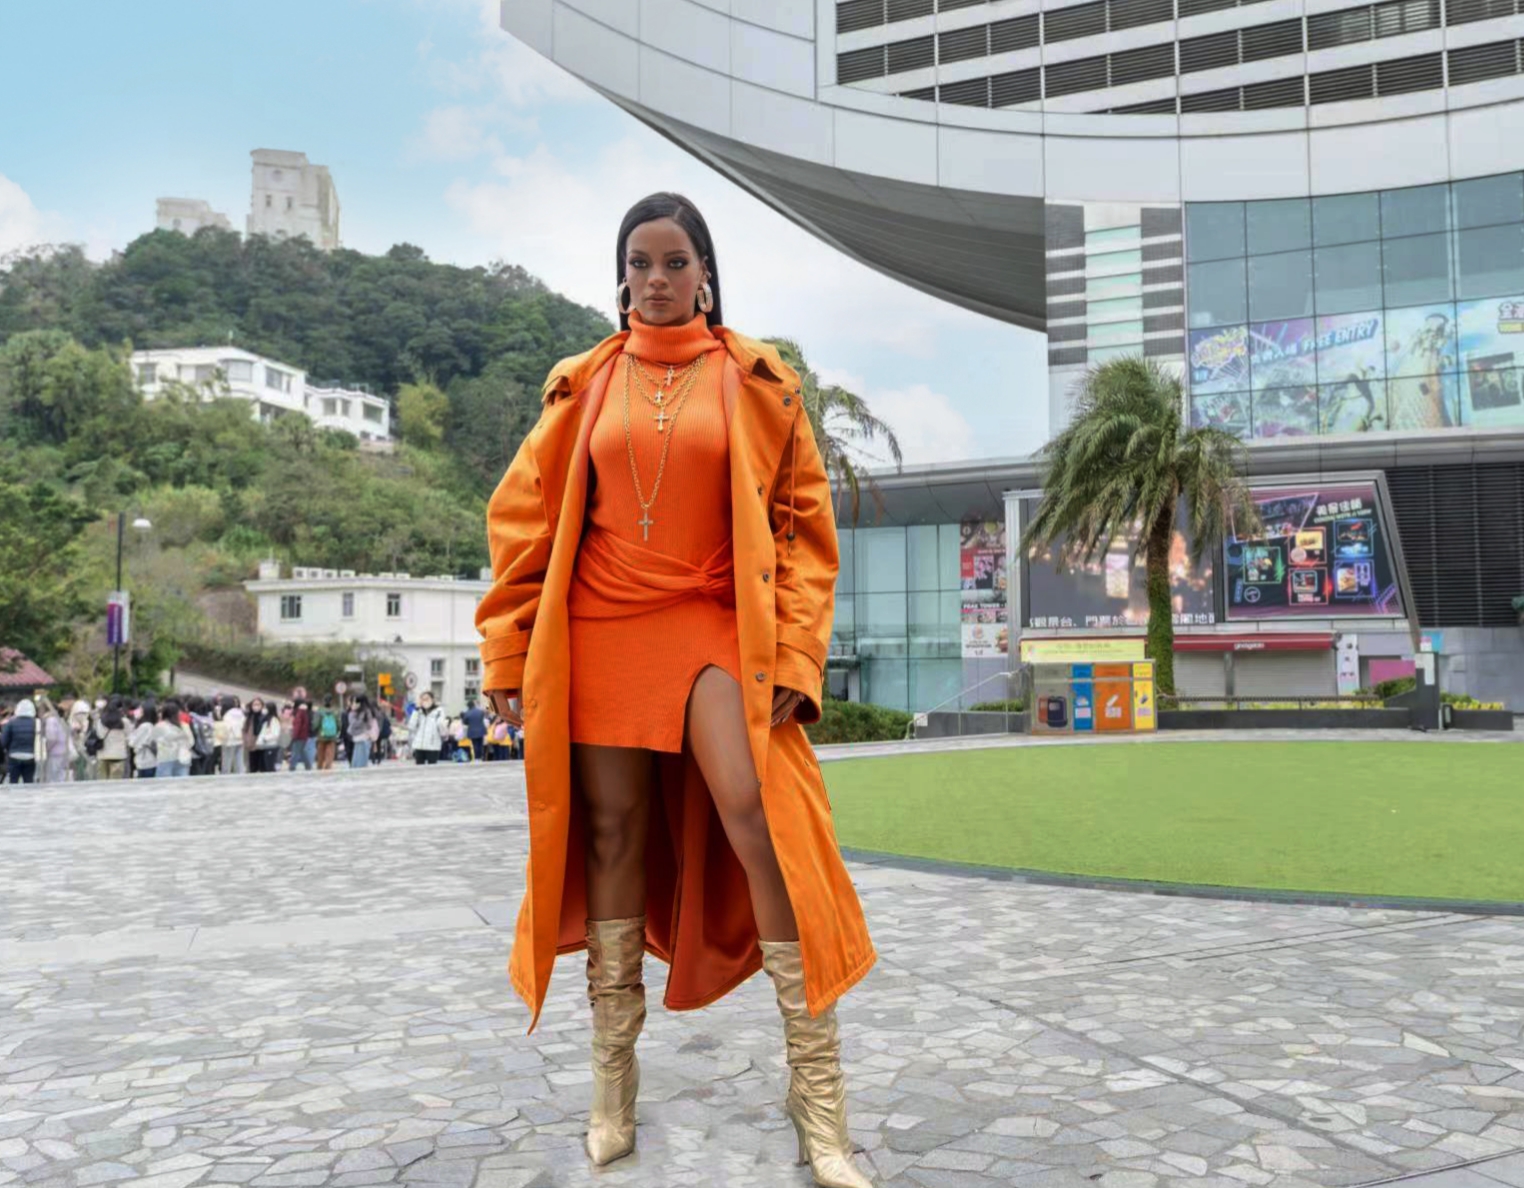 Patung Mode Rihanna  Melengkapi Koleksi Madame Tussauds 